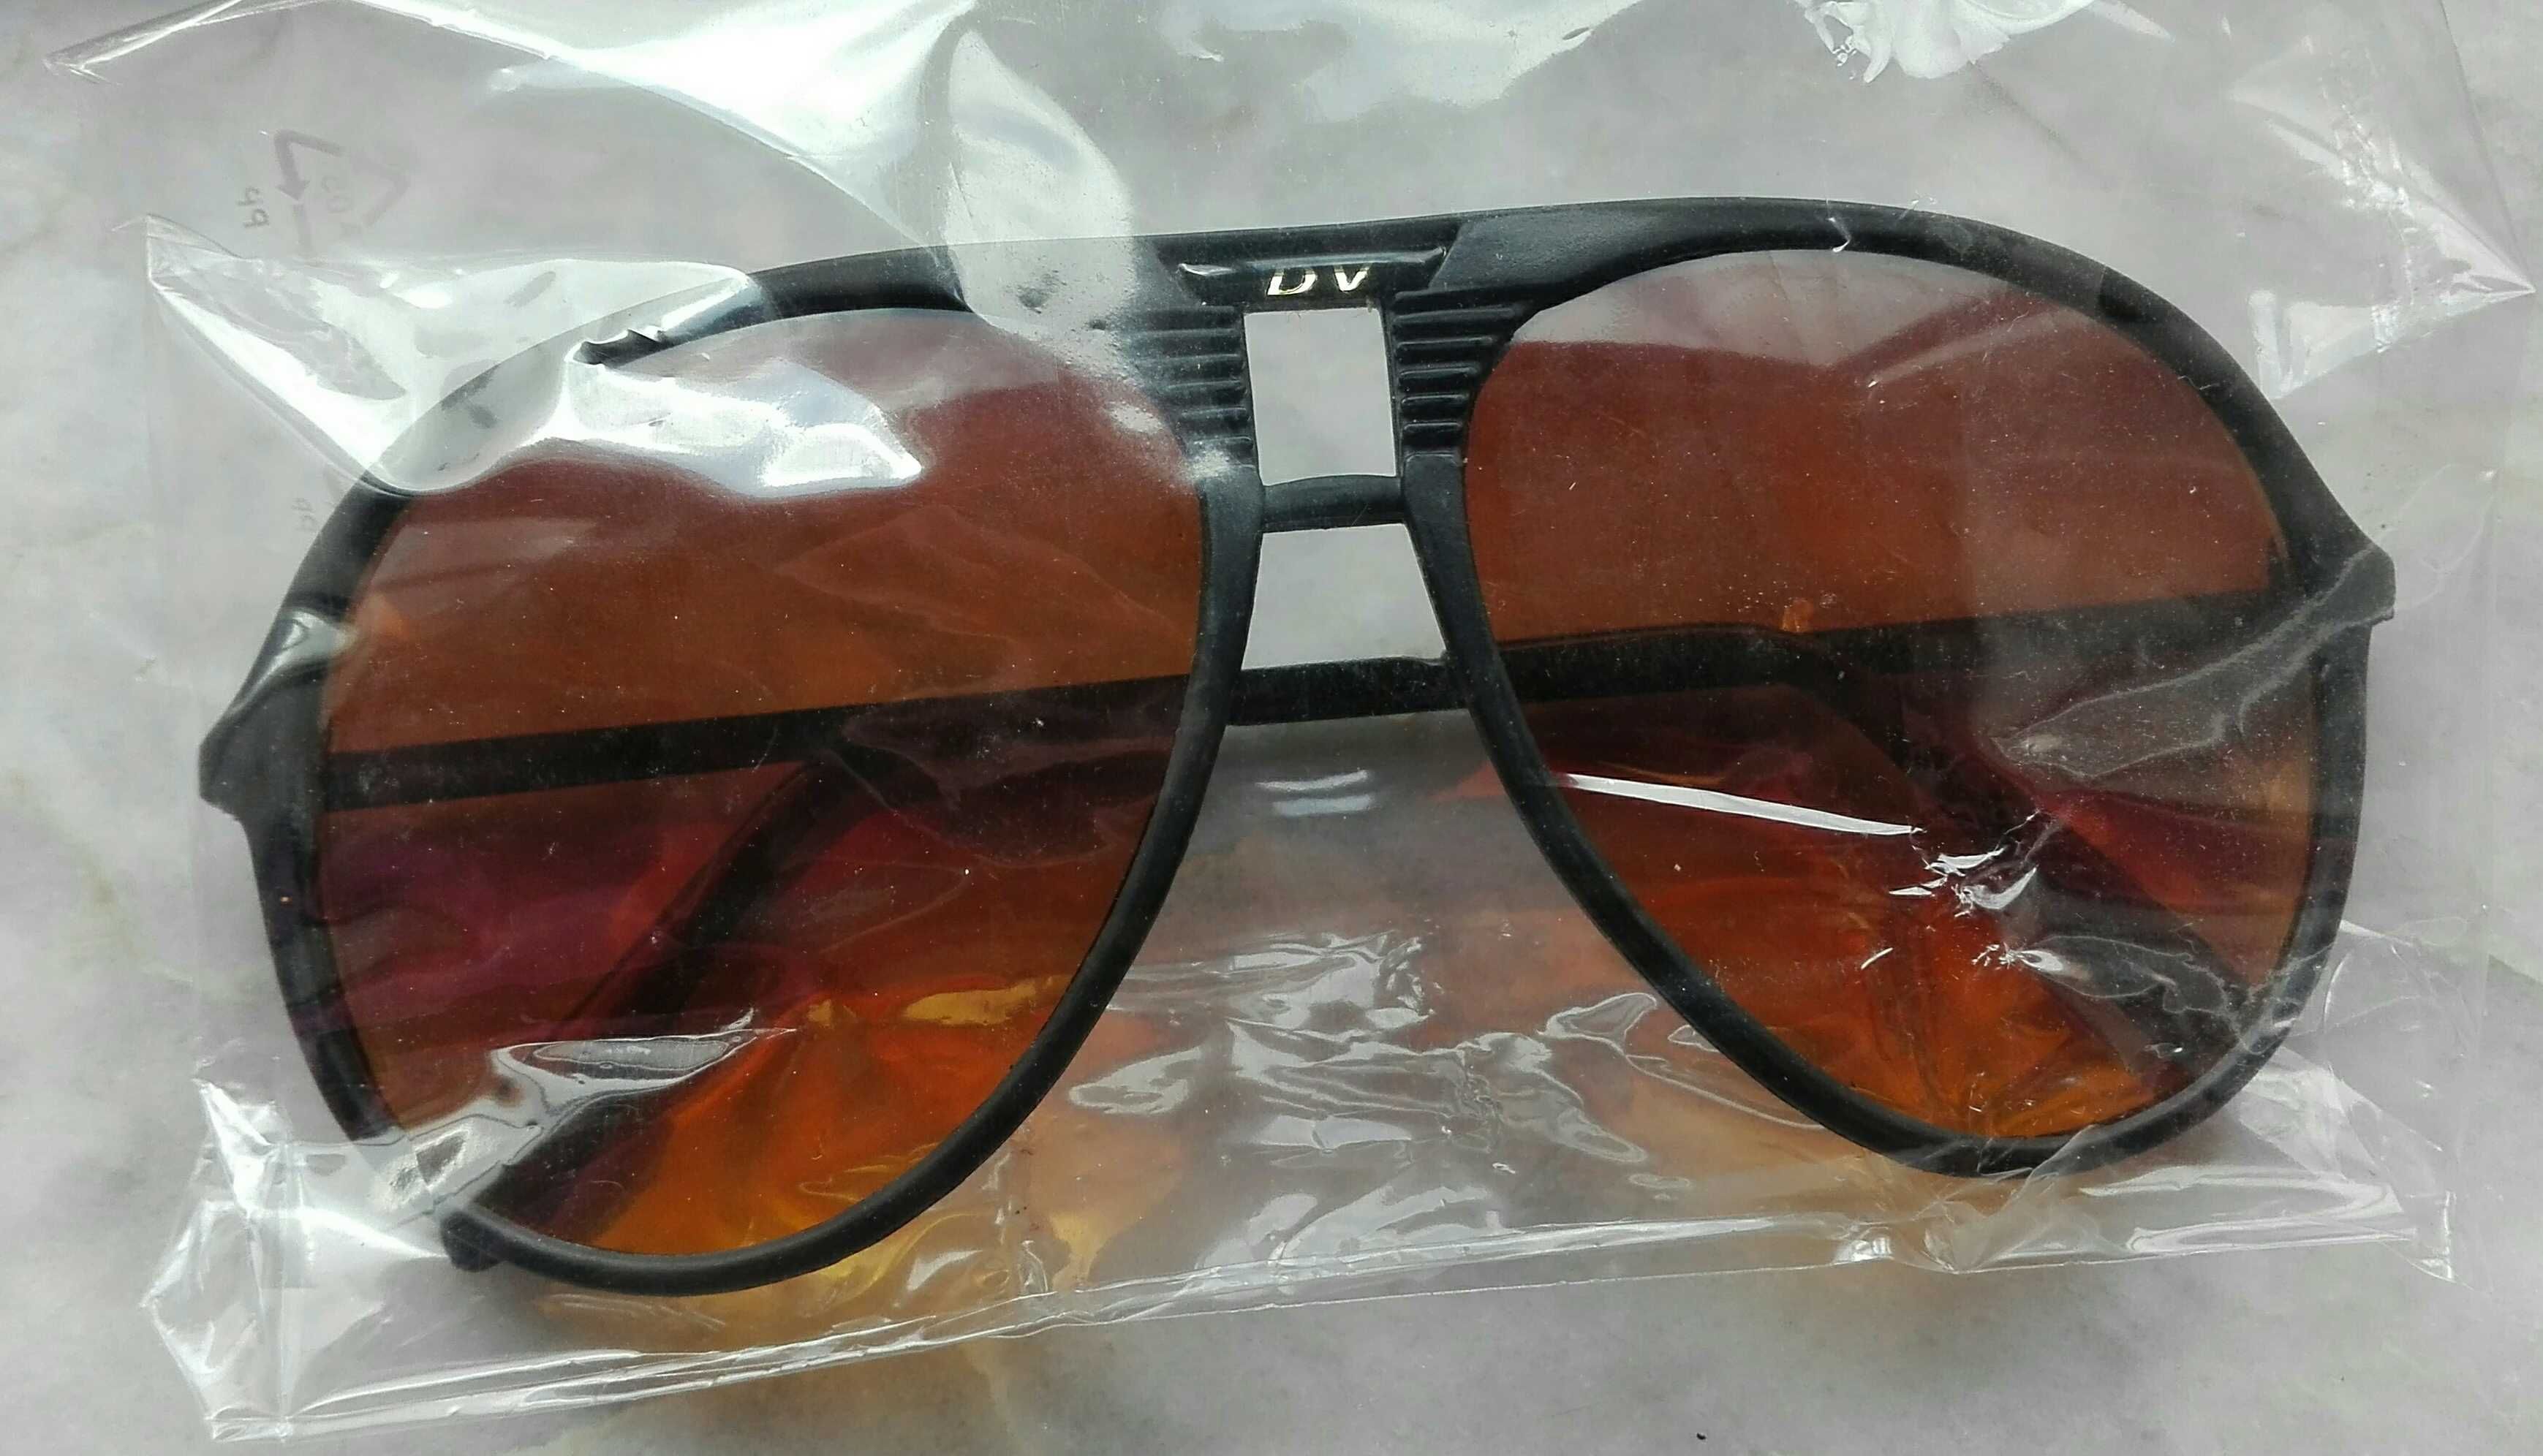 Óculos "Dv" (Novos)